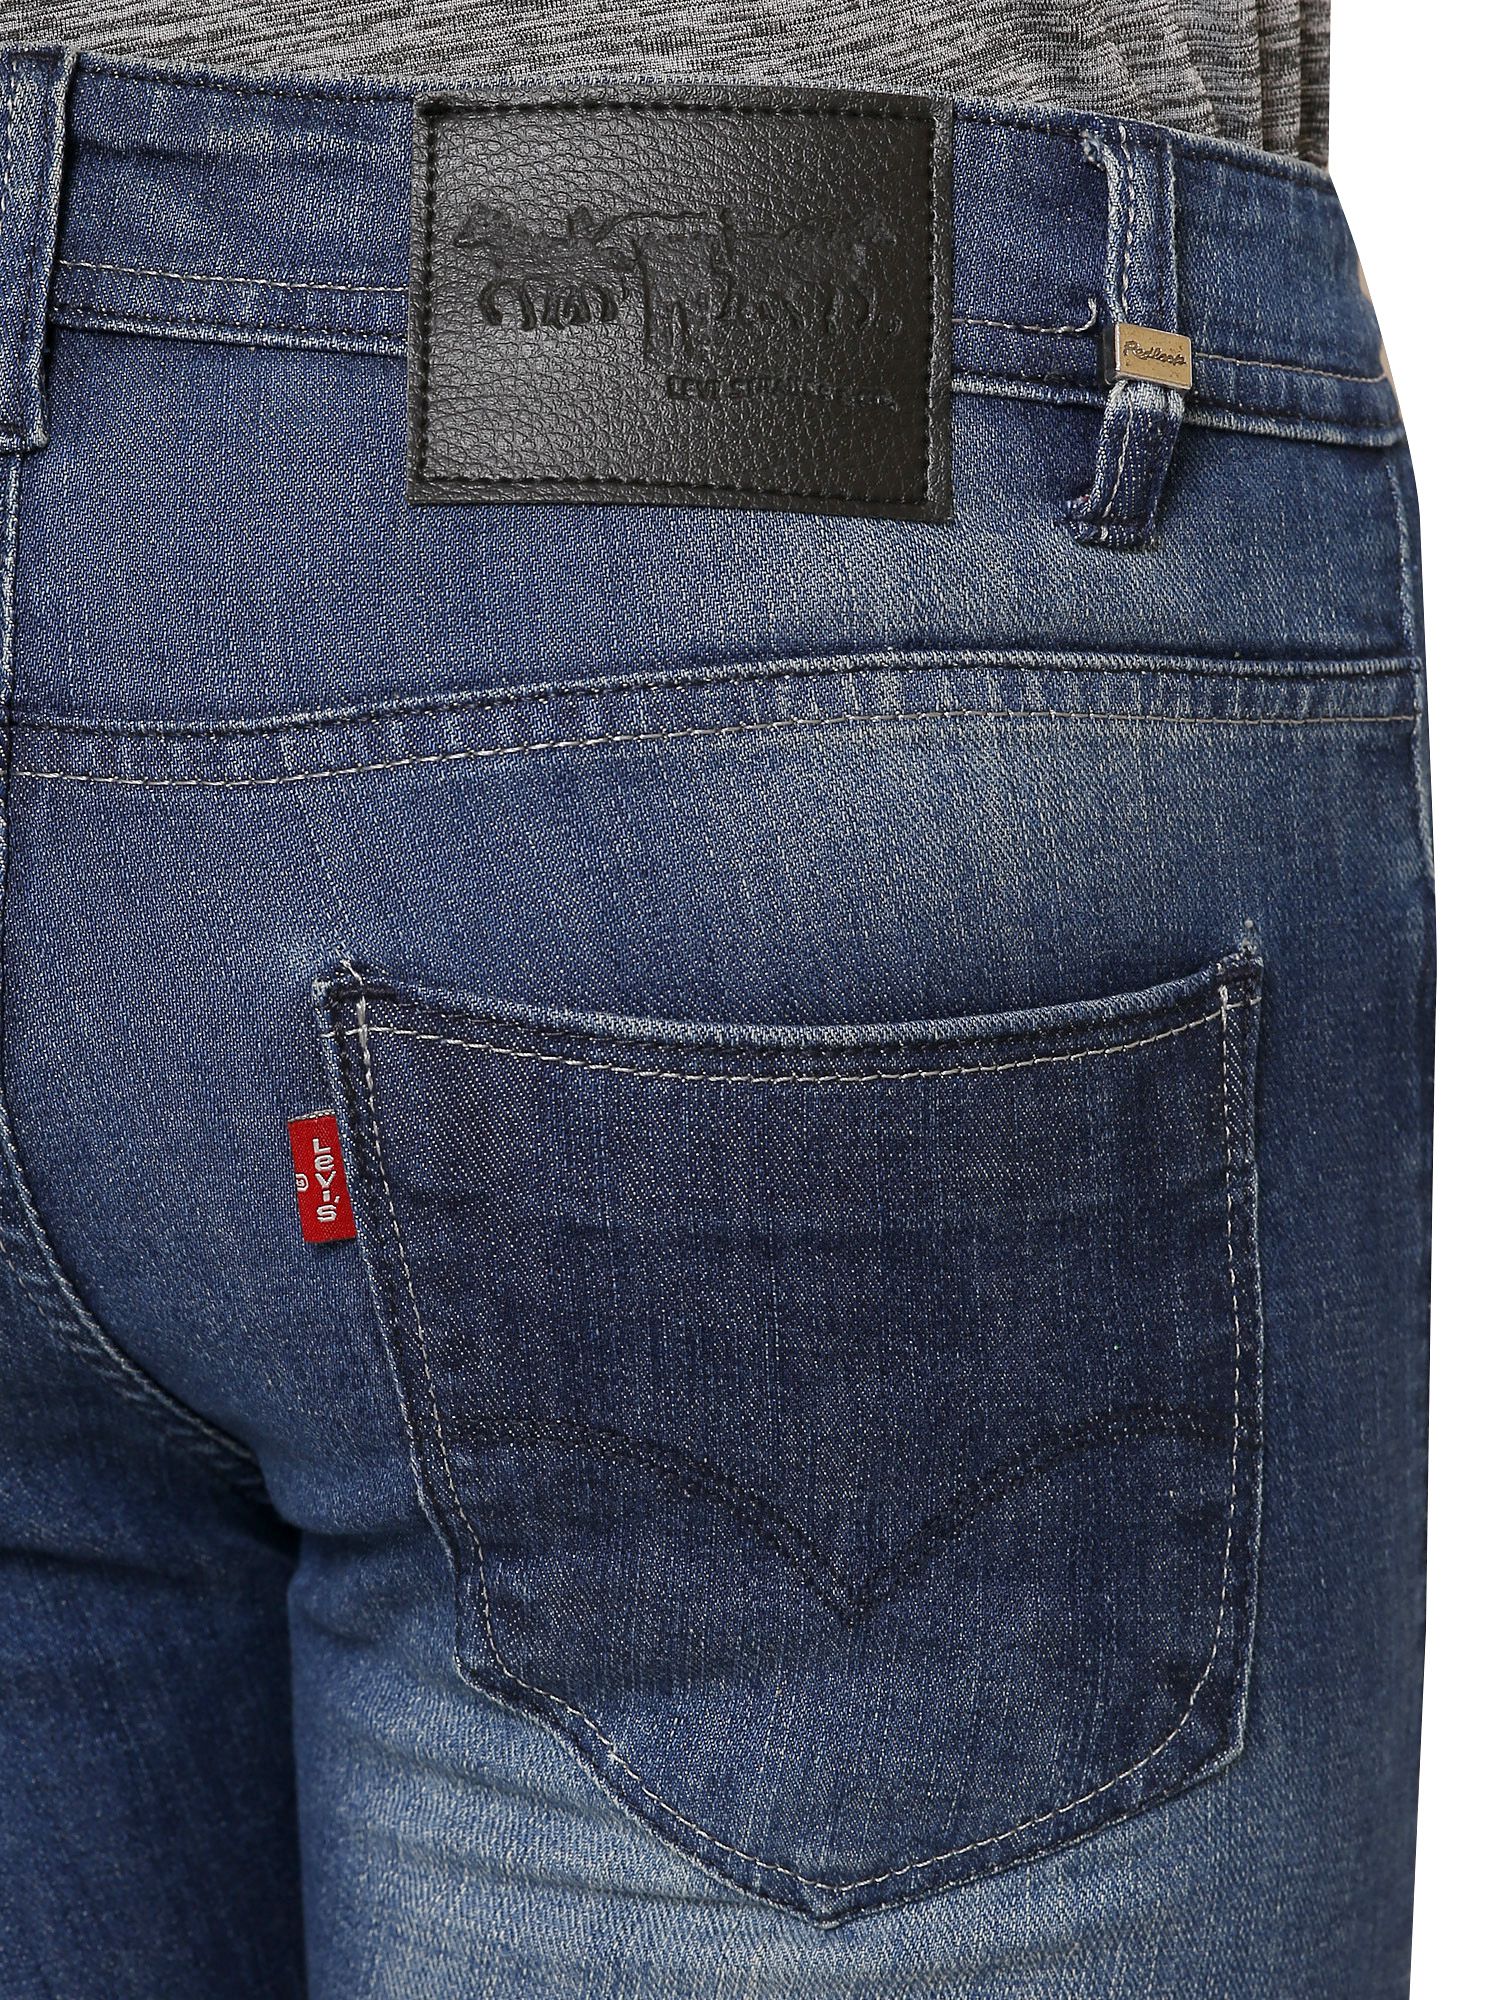 levis redloop jeans price